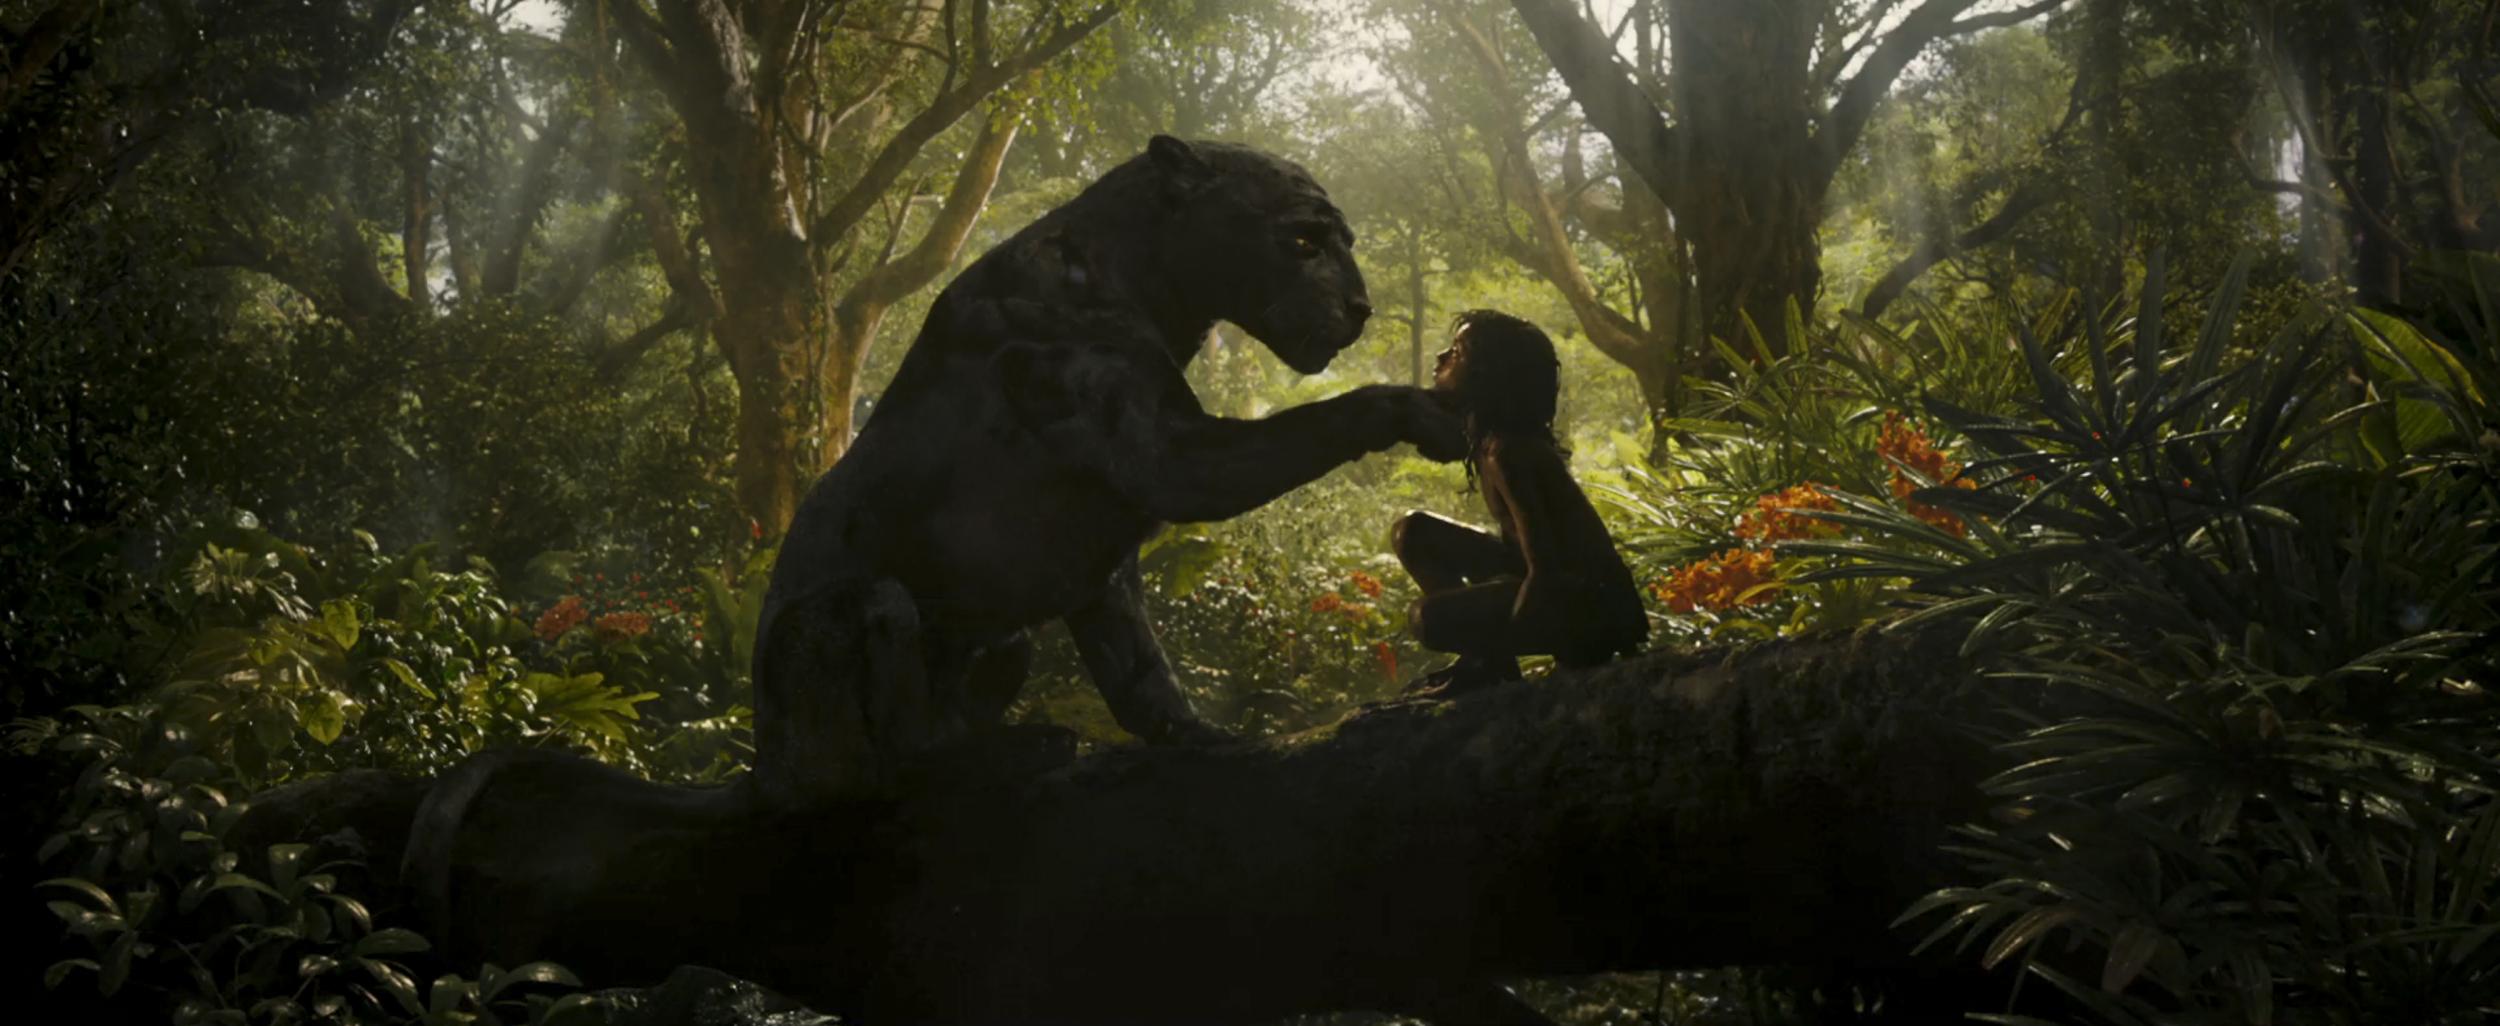 Mowgli: Legend of the Jungle - 7 December